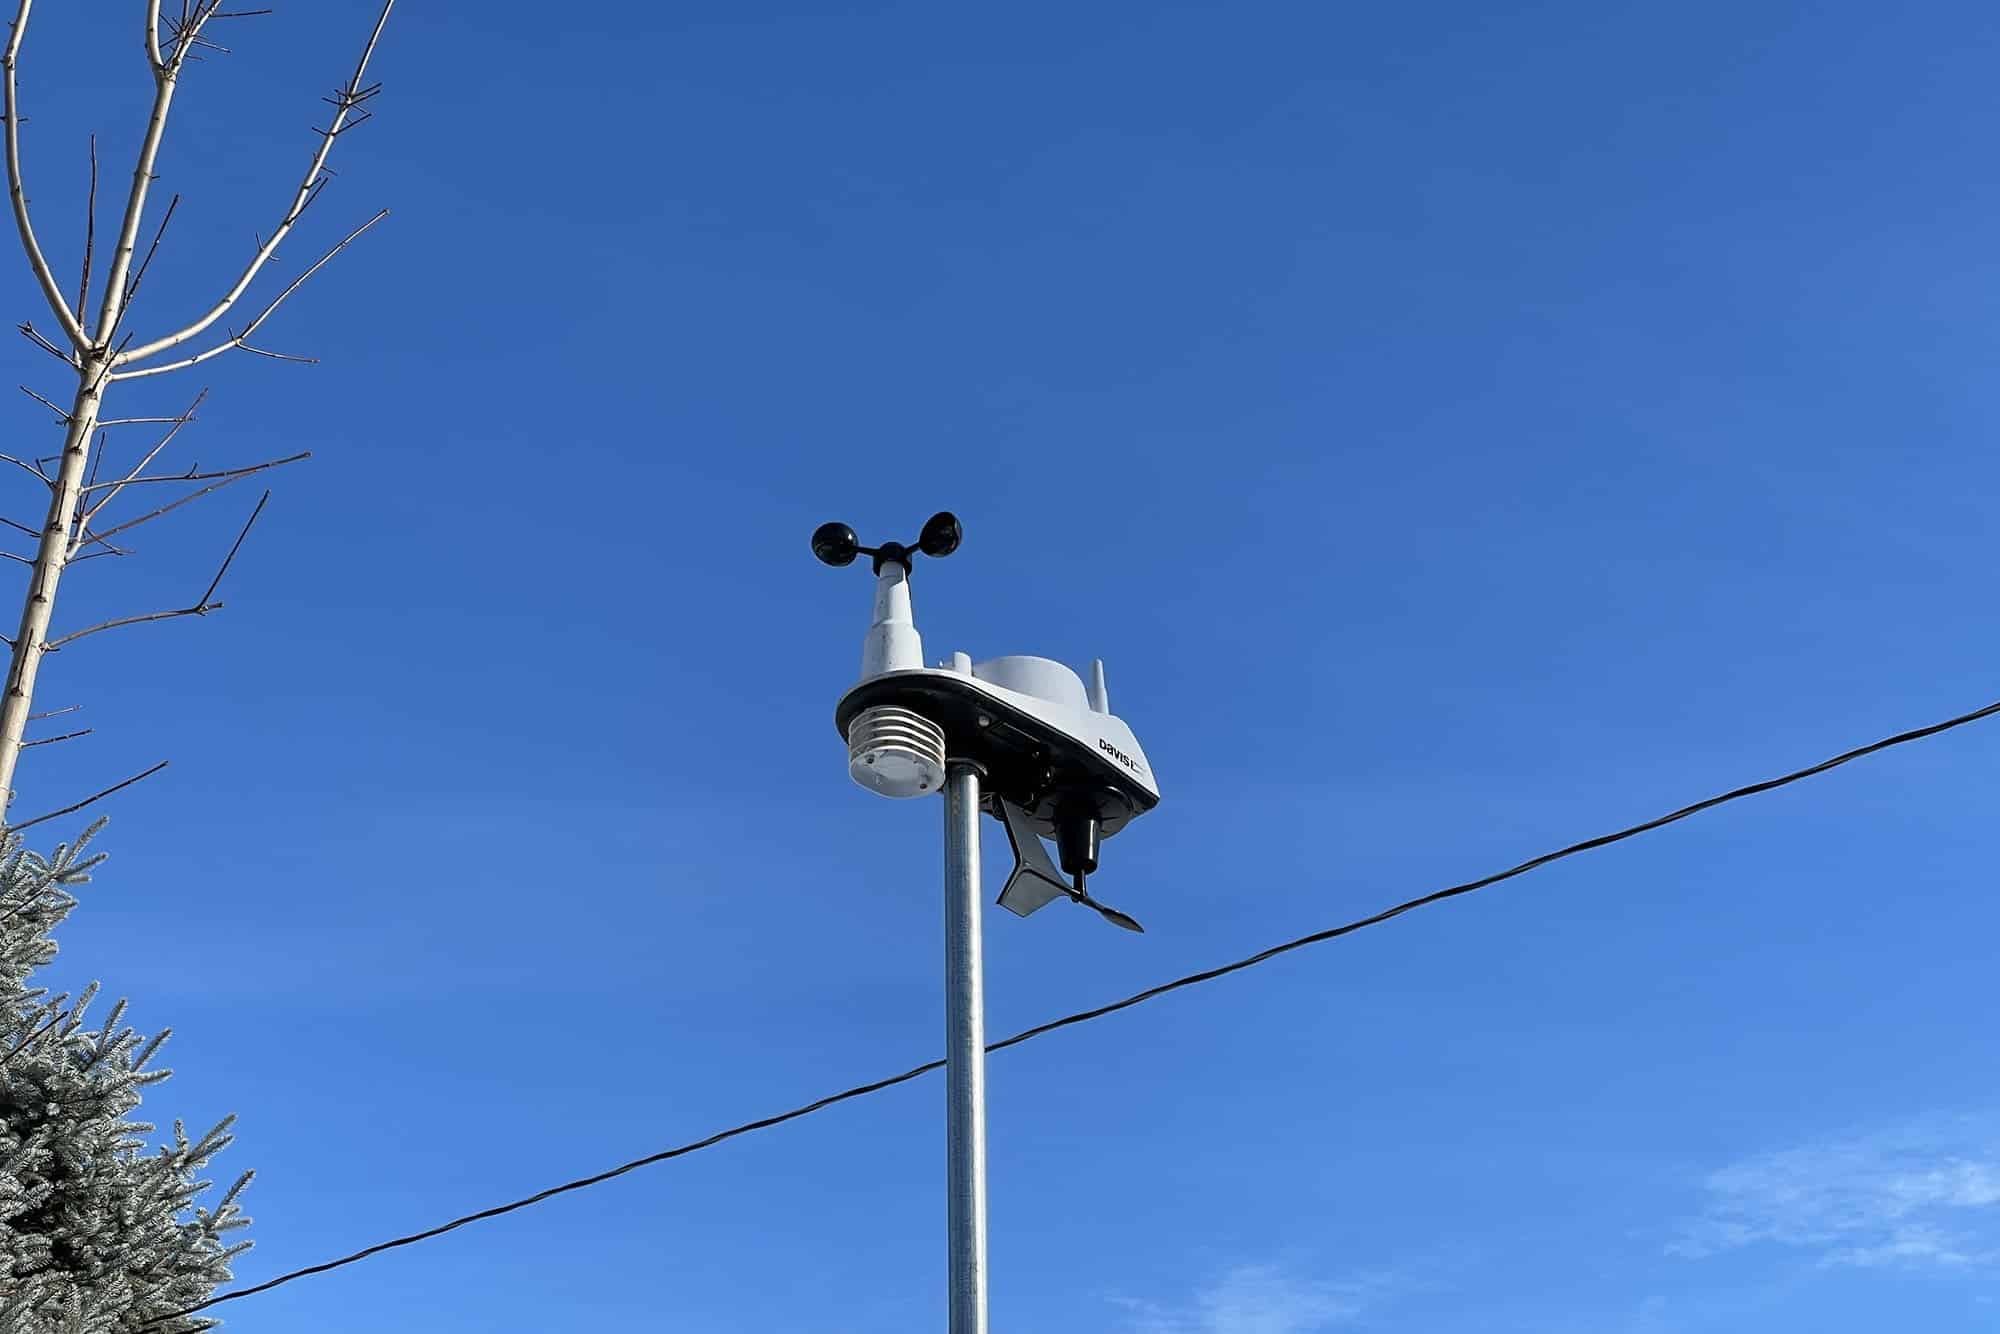 Davis Vantage Vue mounted atop pole